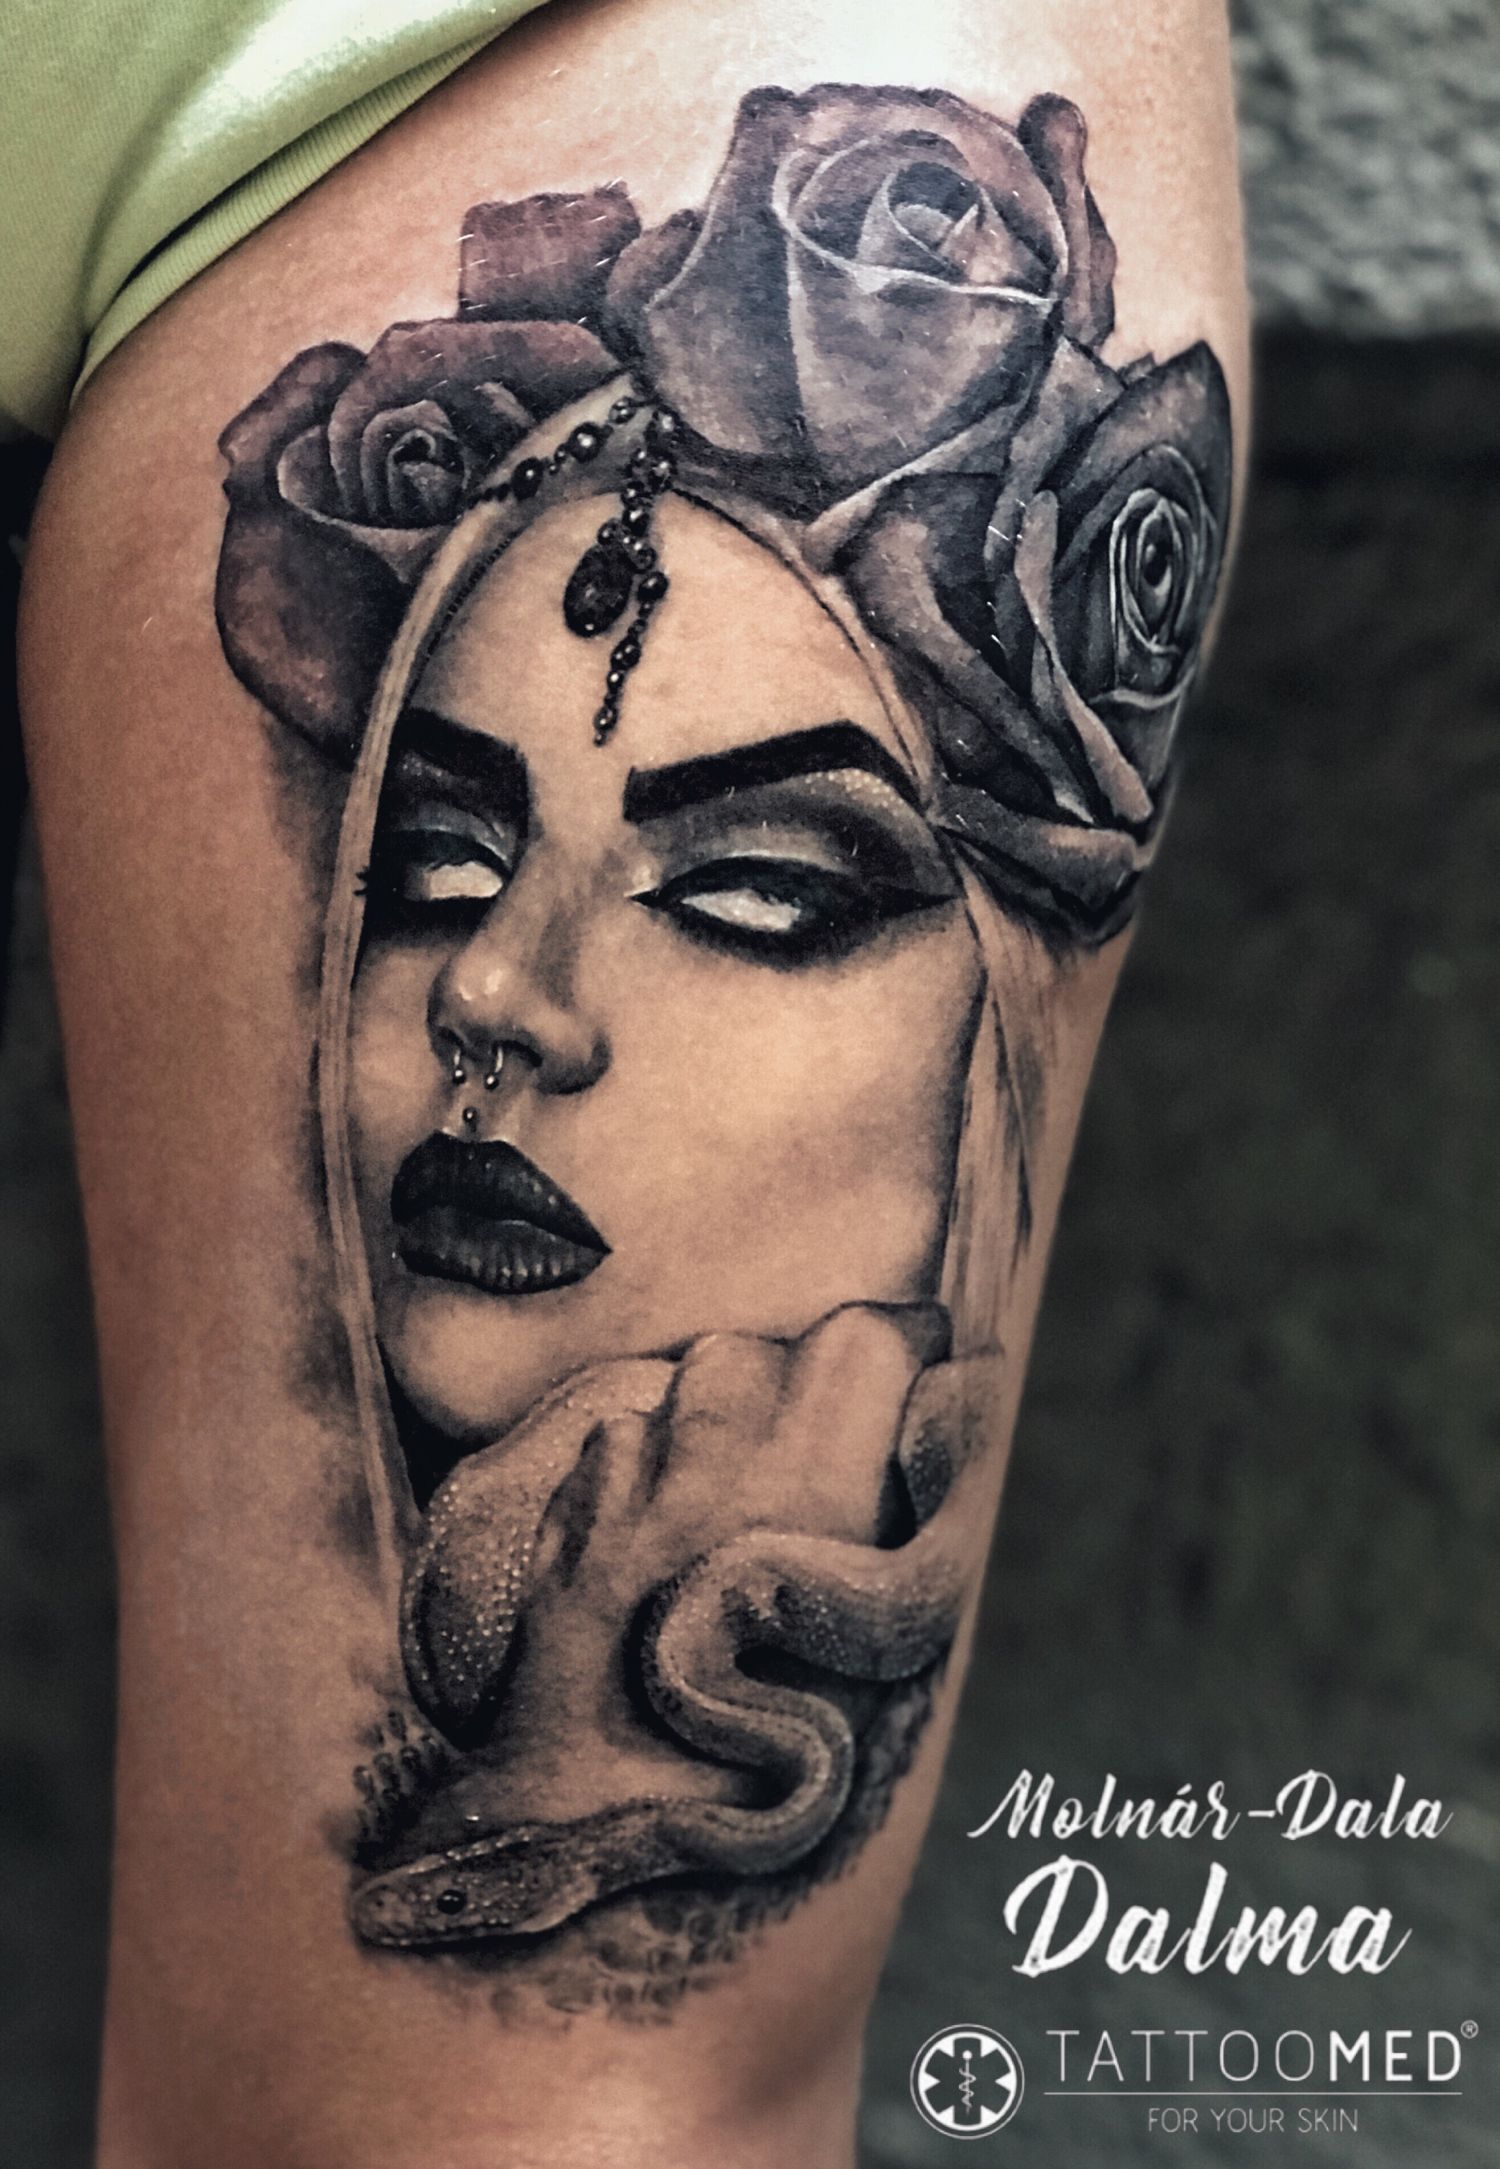 Comb tetoválás, Fantázia tetoválás, Fekete fehér tetoválás, Portré tetoválás, Realisztikus tetoválás, Virág tetoválás